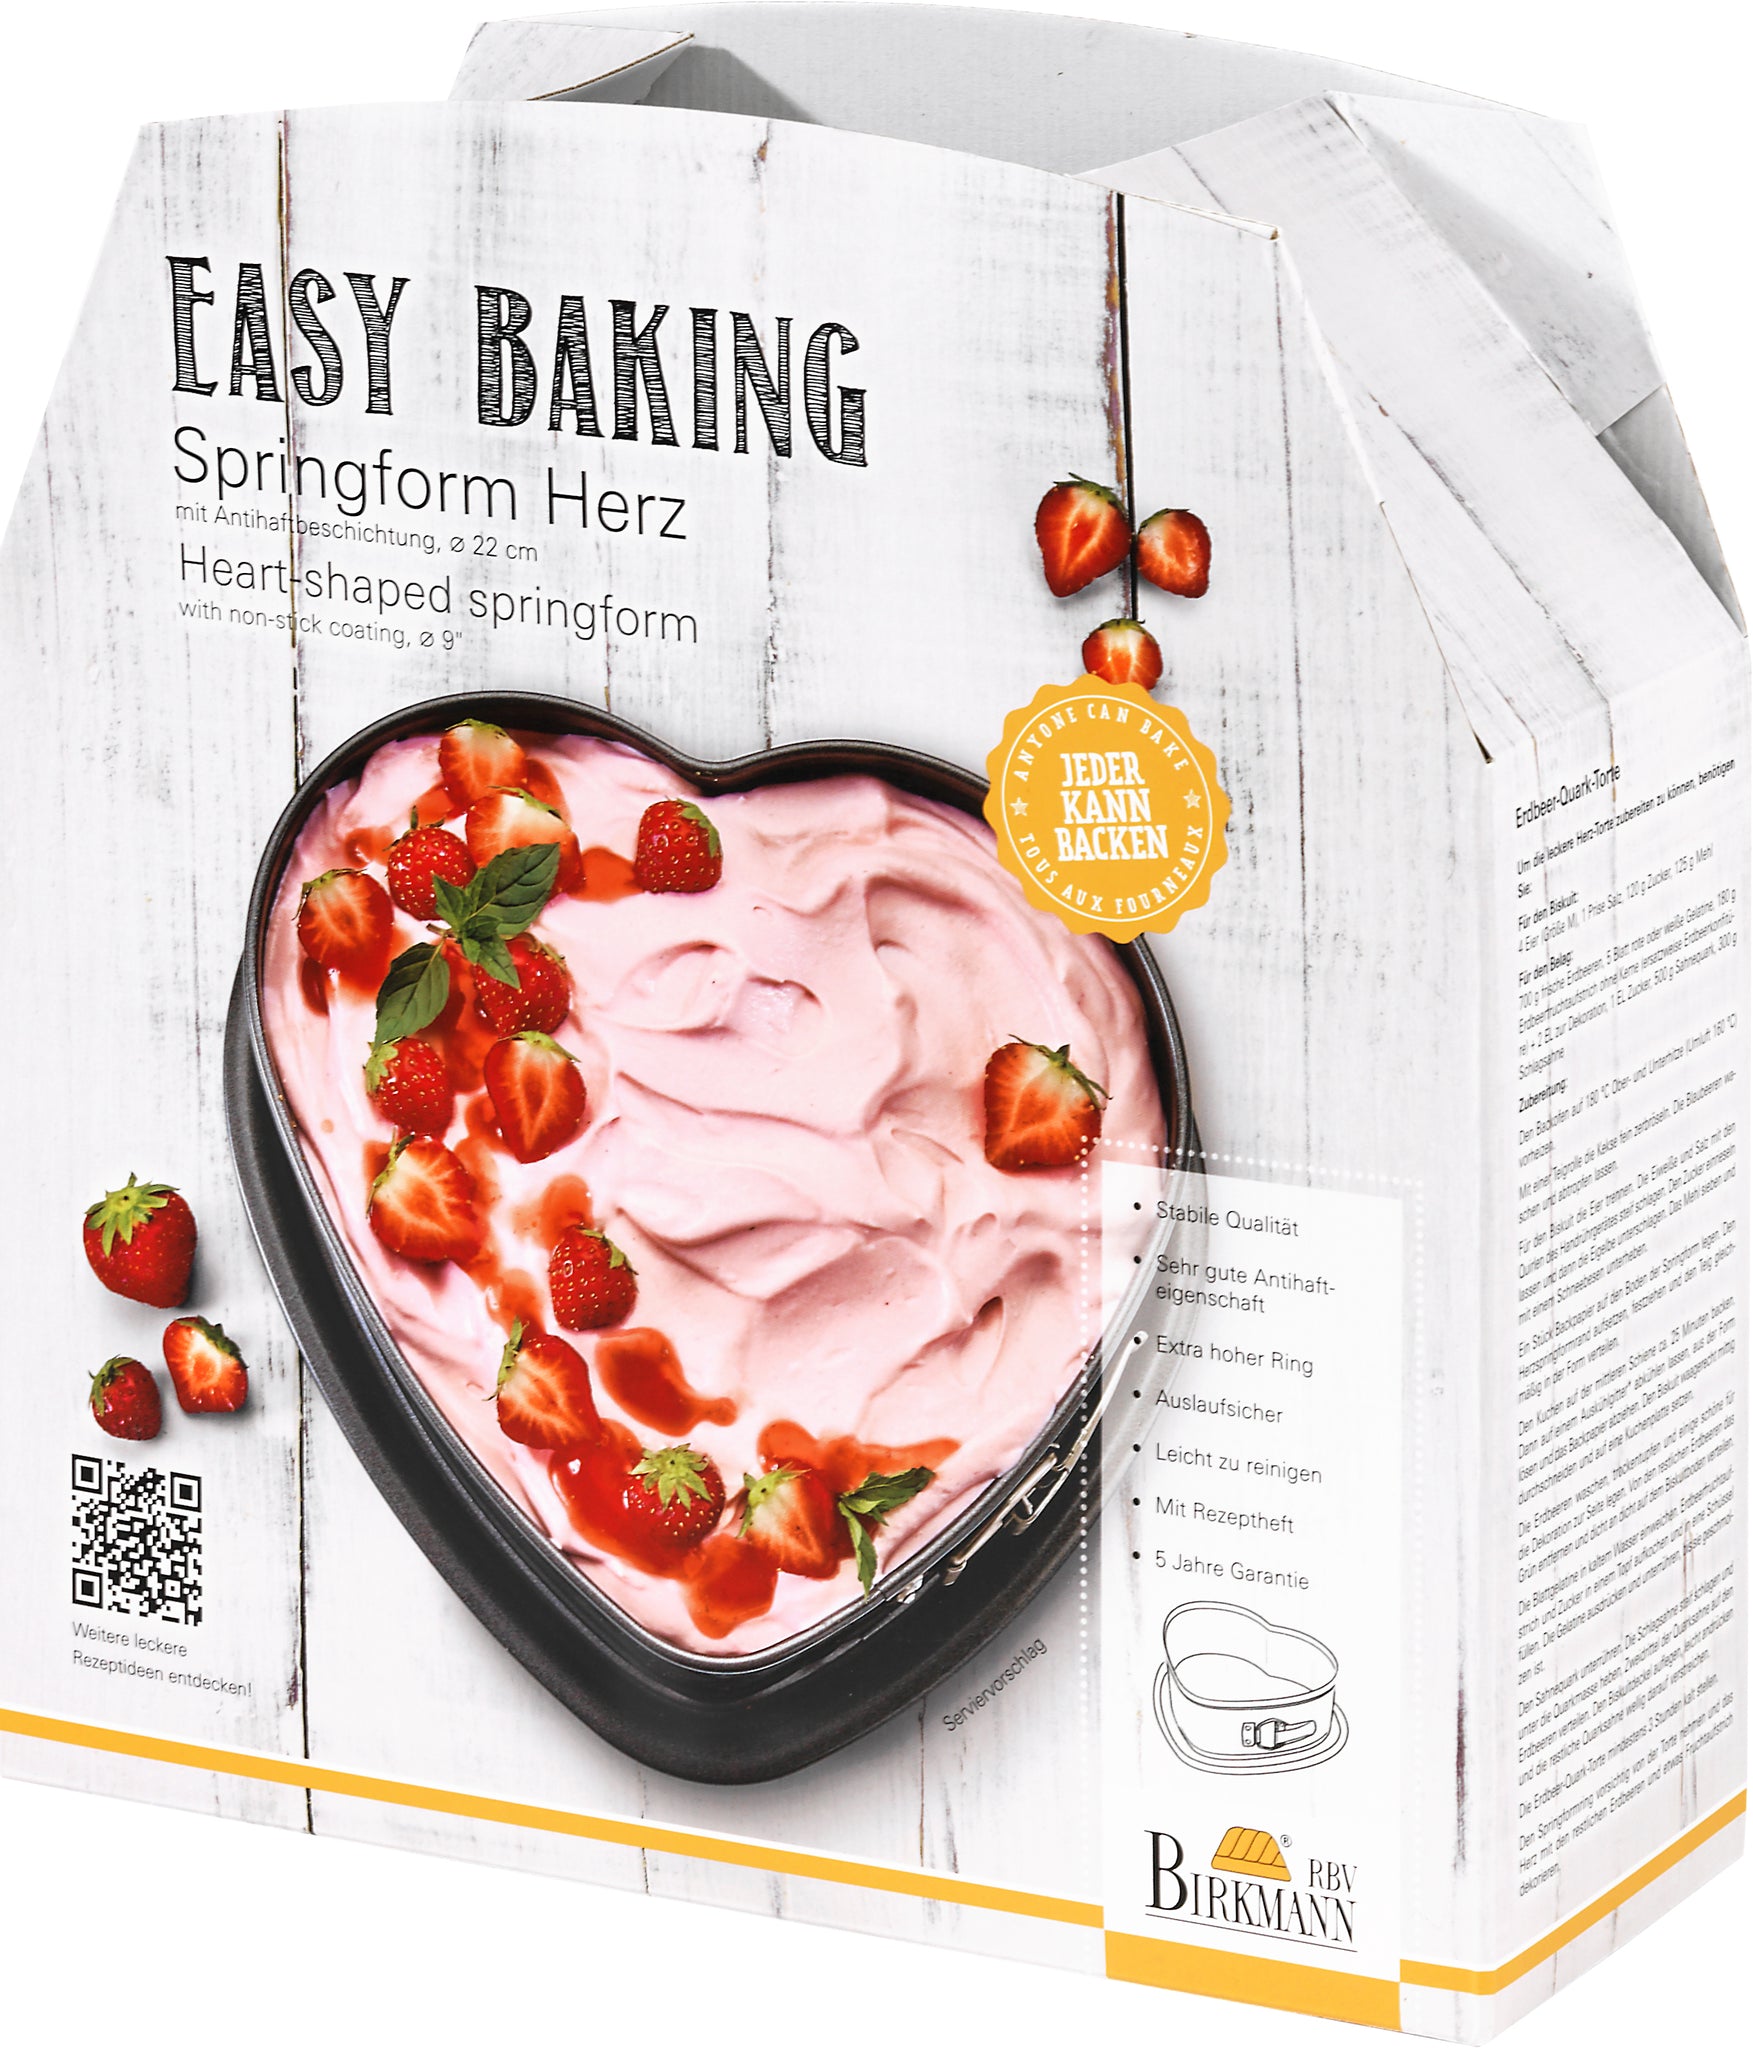 -RBV Birkmann- "Easy Baking" Springform Herz 22cm -Marken-Antihaftbeschichtung-